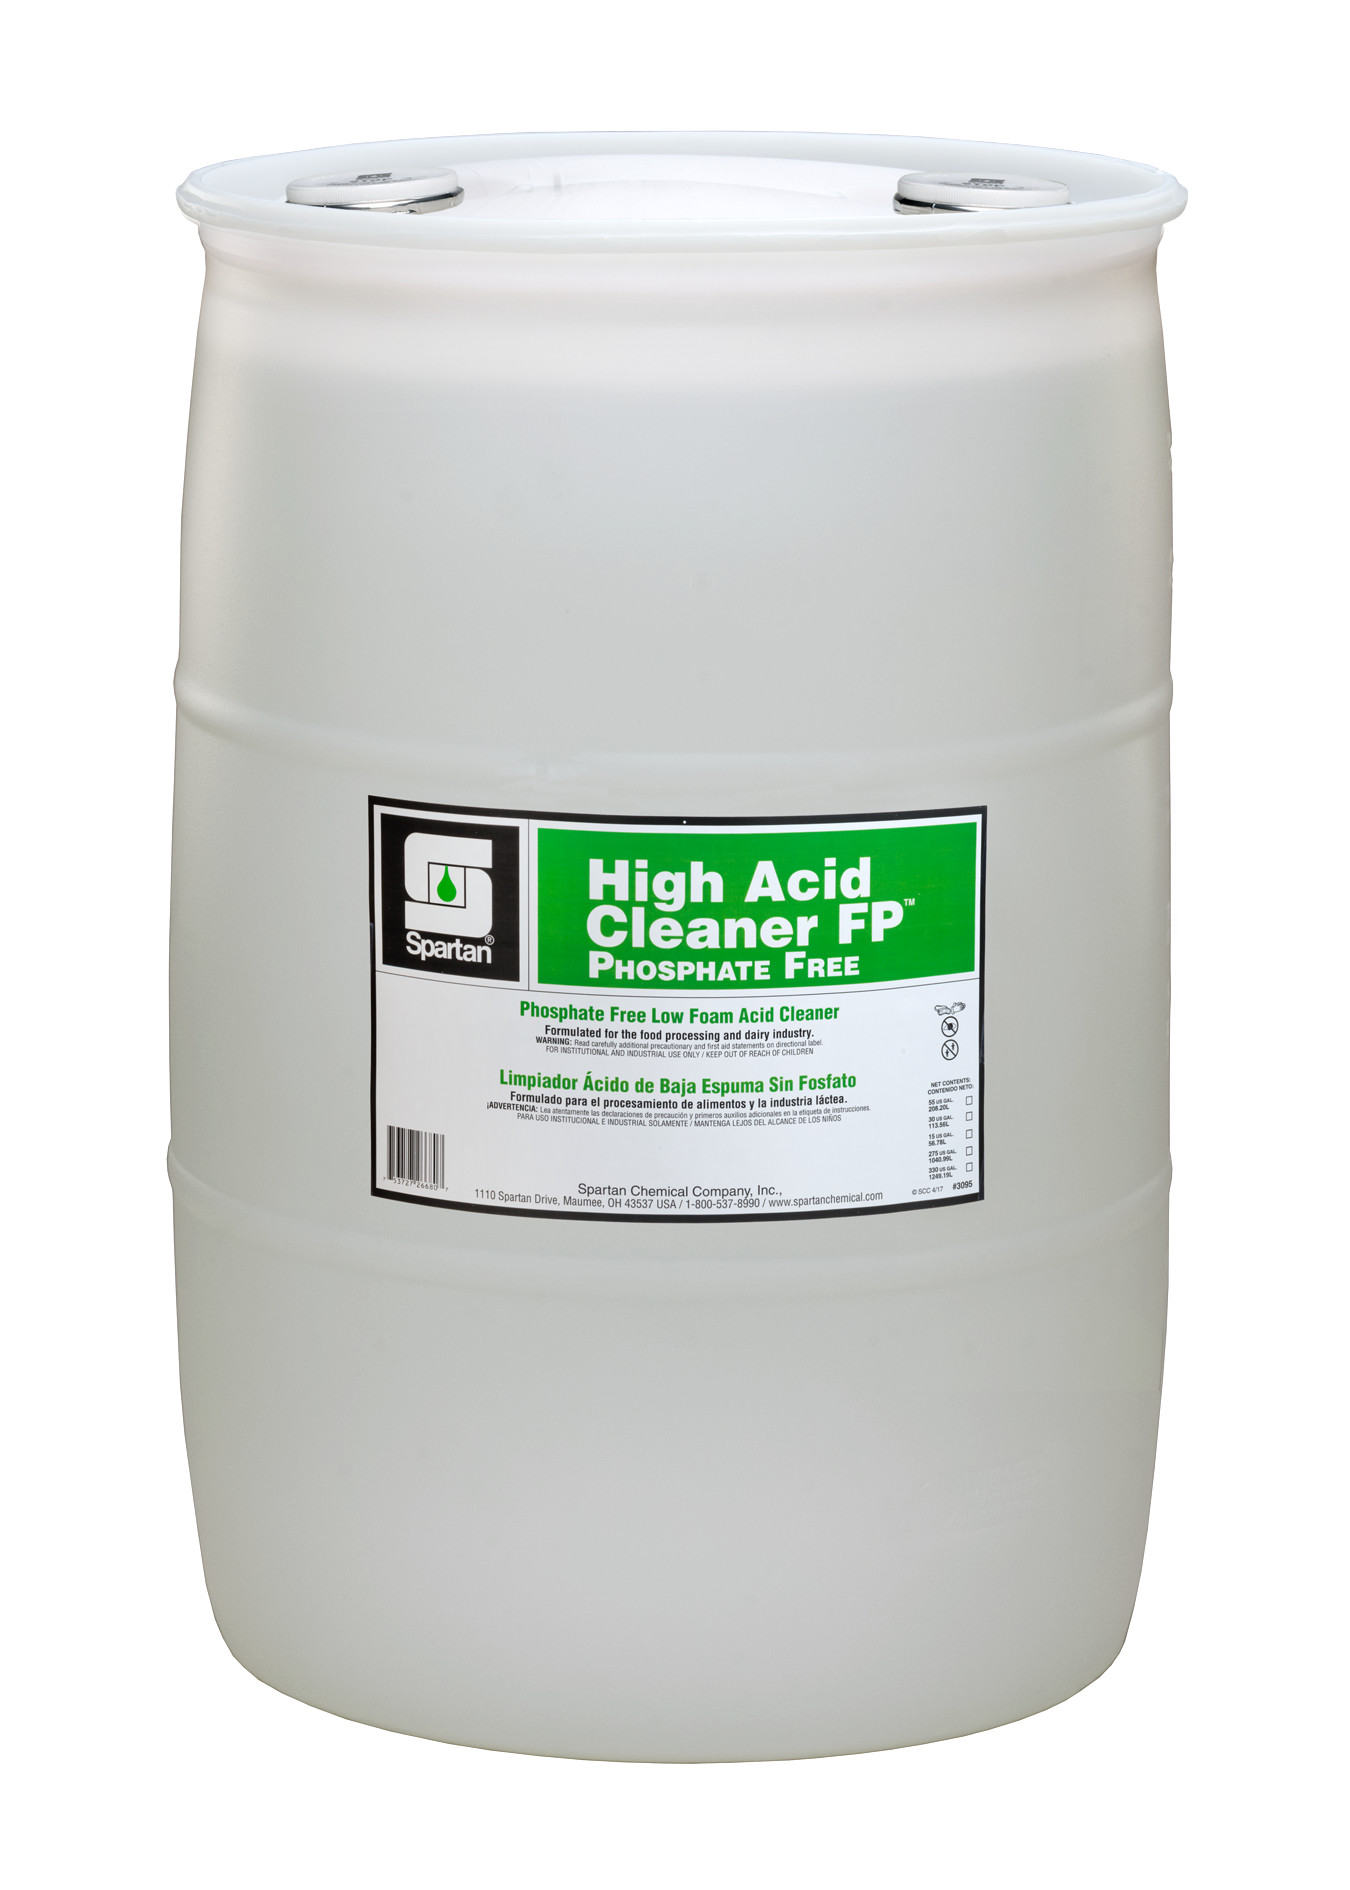 Spartan Chemical Company High Acid Cleaner FP Phosphate Free, 30 GAL DRUM